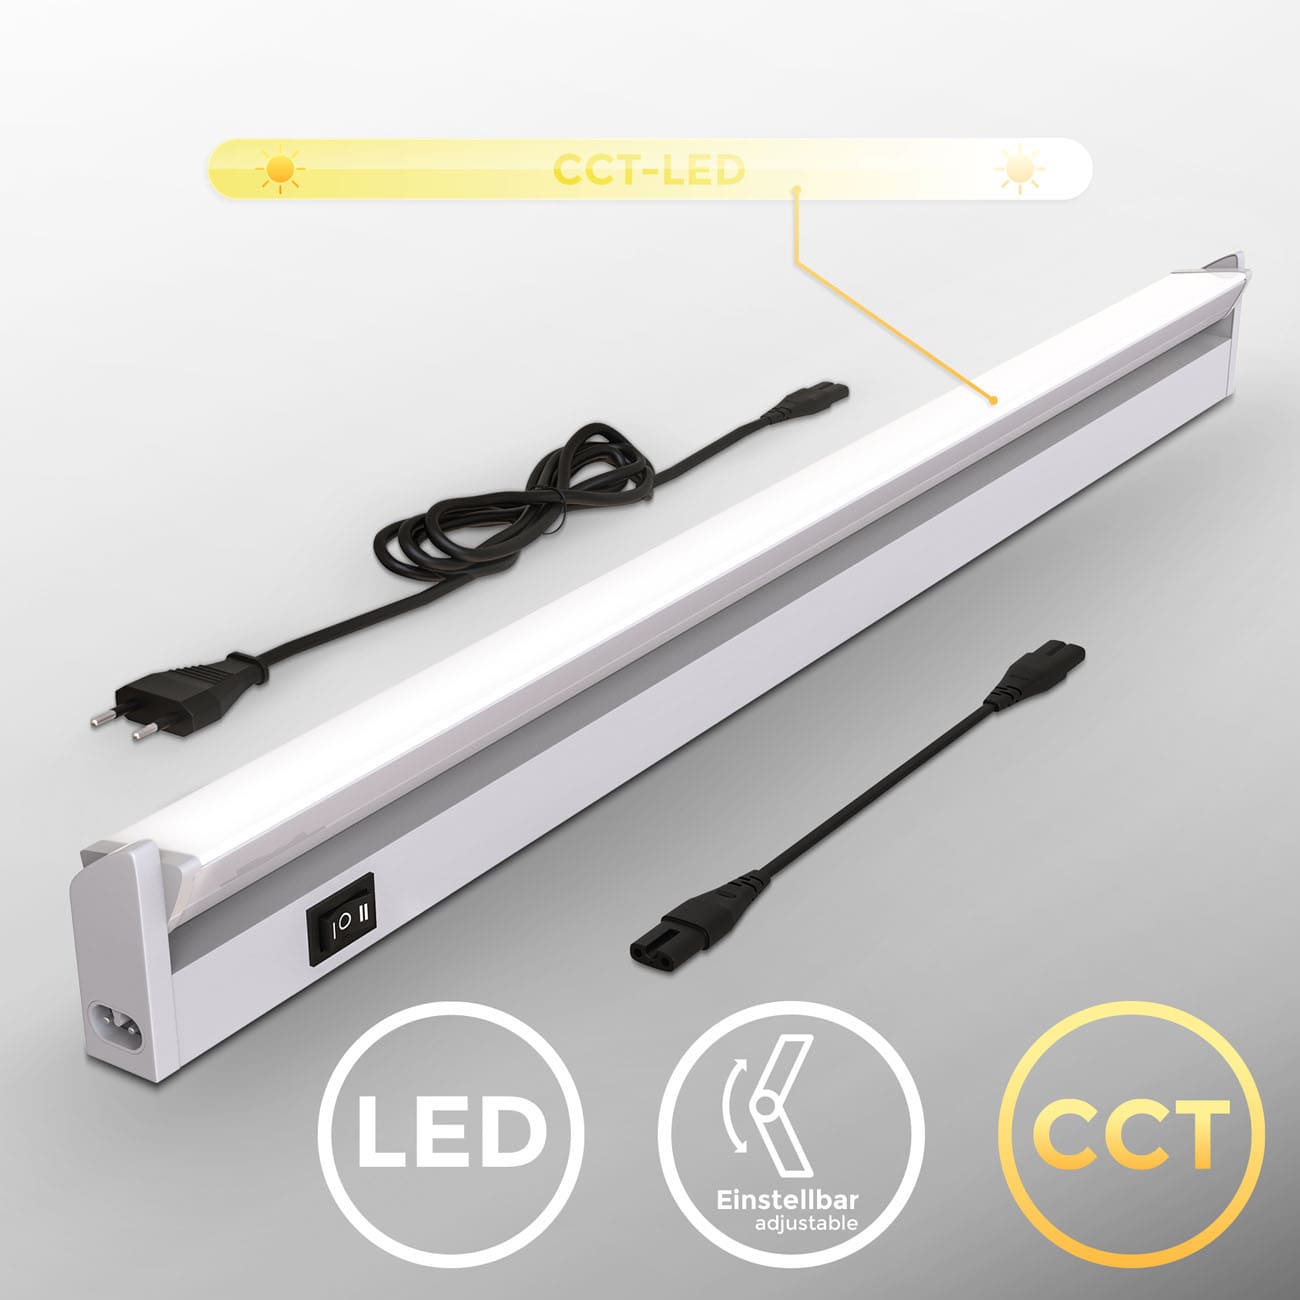 LED CCT Lichtleiste Unterschrankleuchte silber - 3